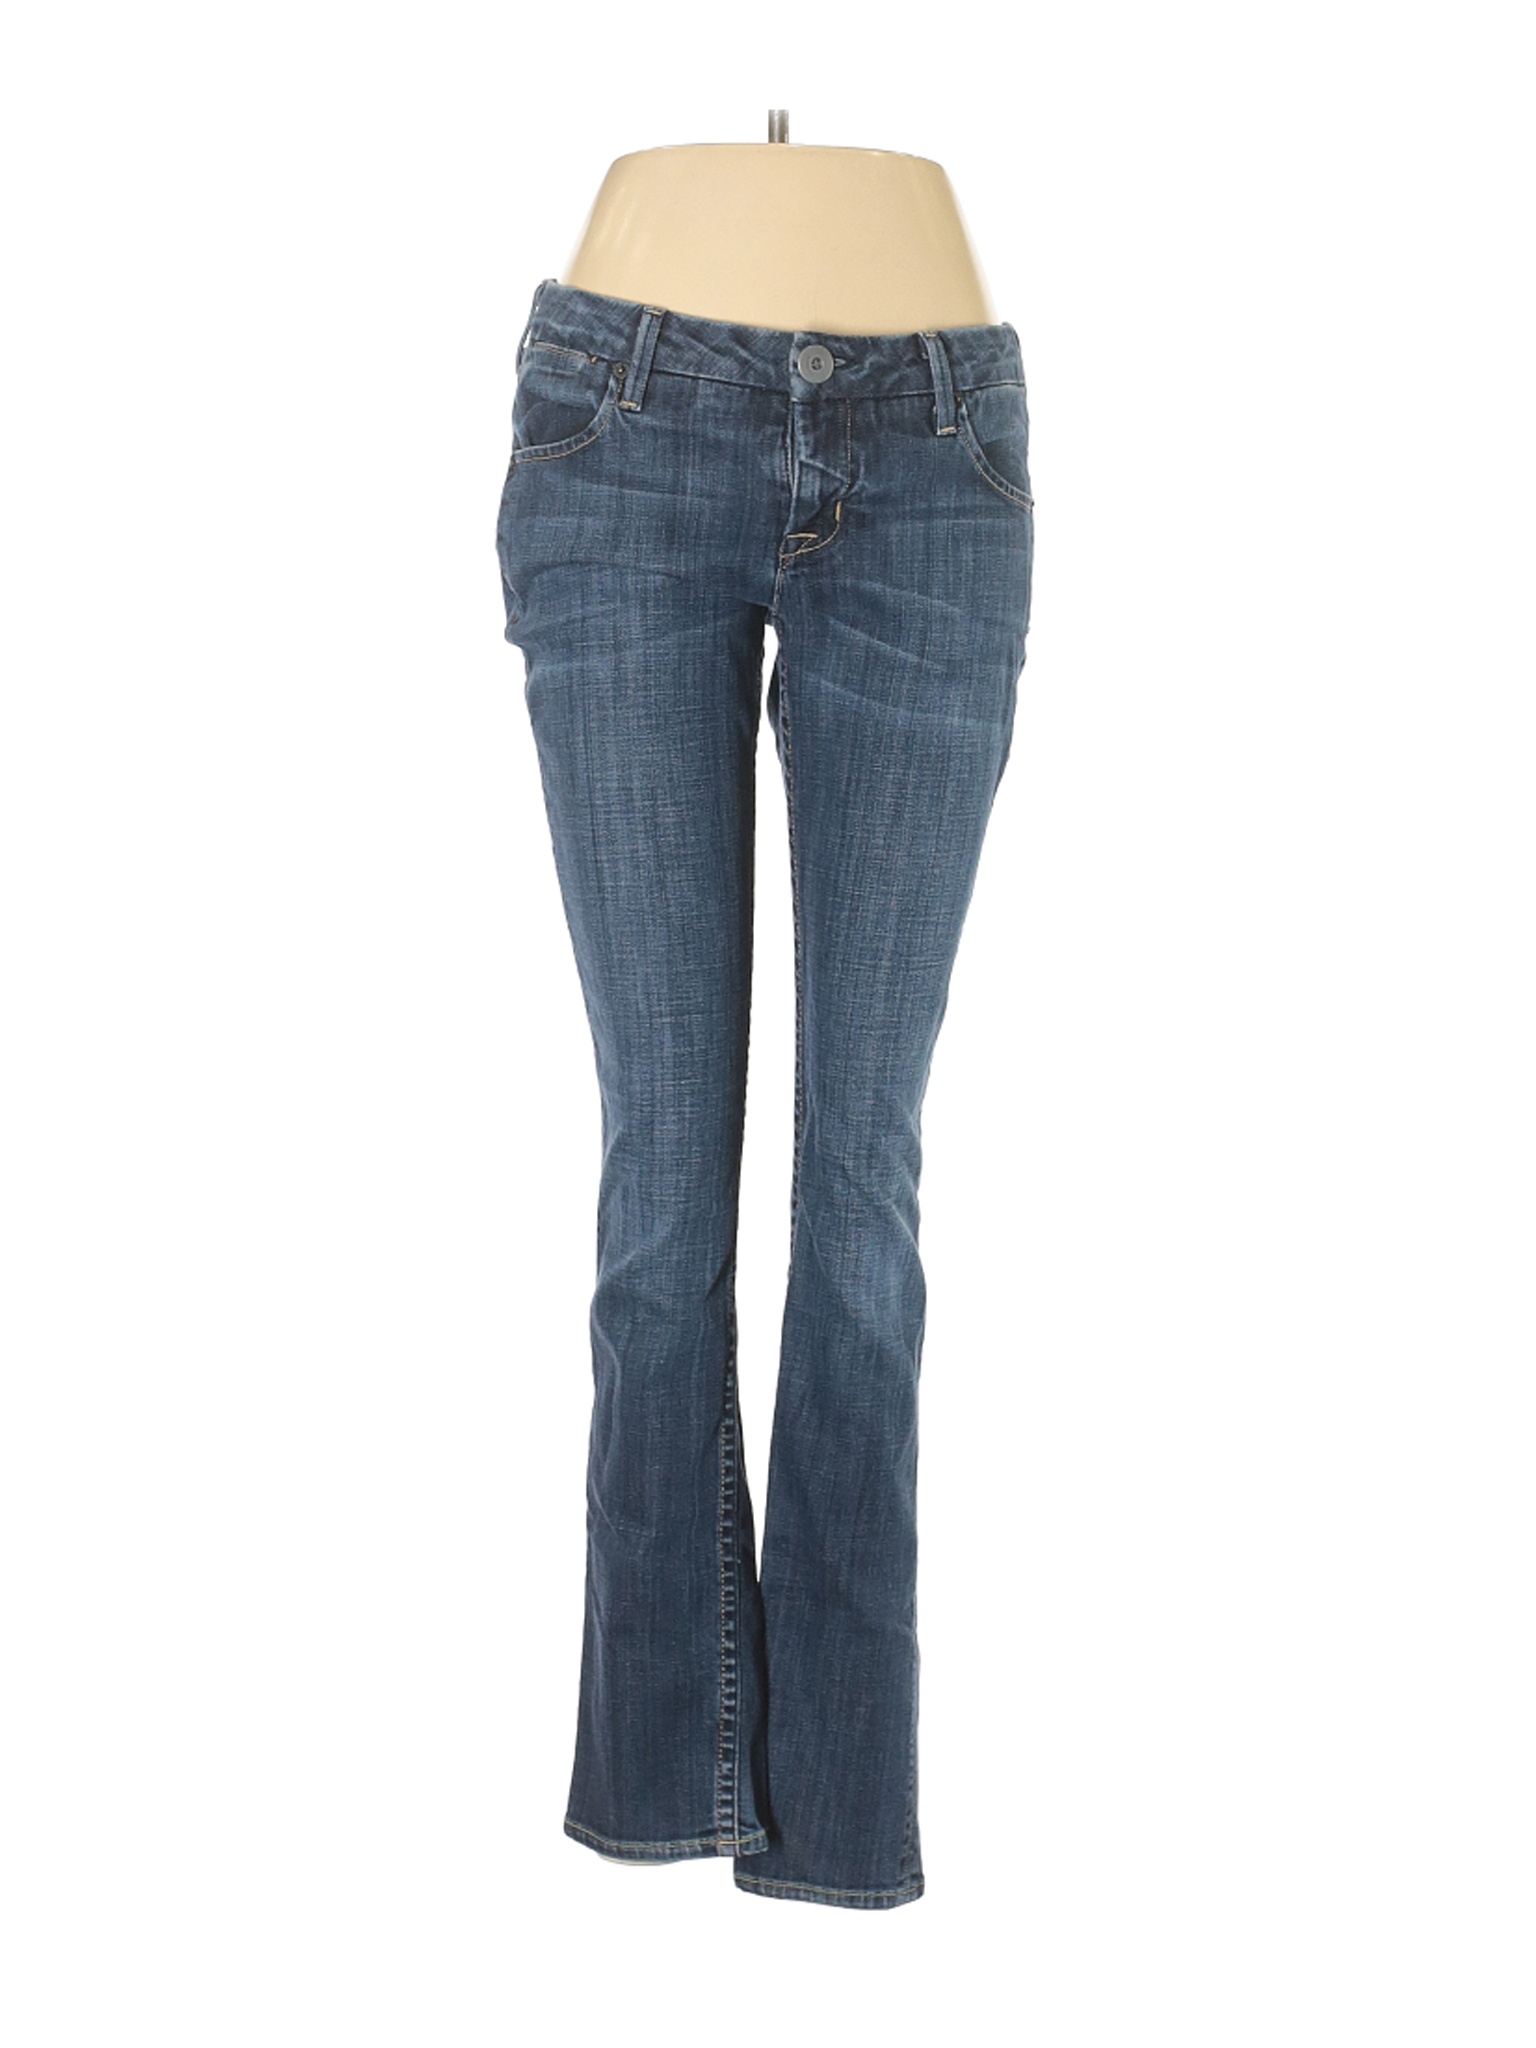 Hudson Jeans Women Blue Jeans 28W | eBay